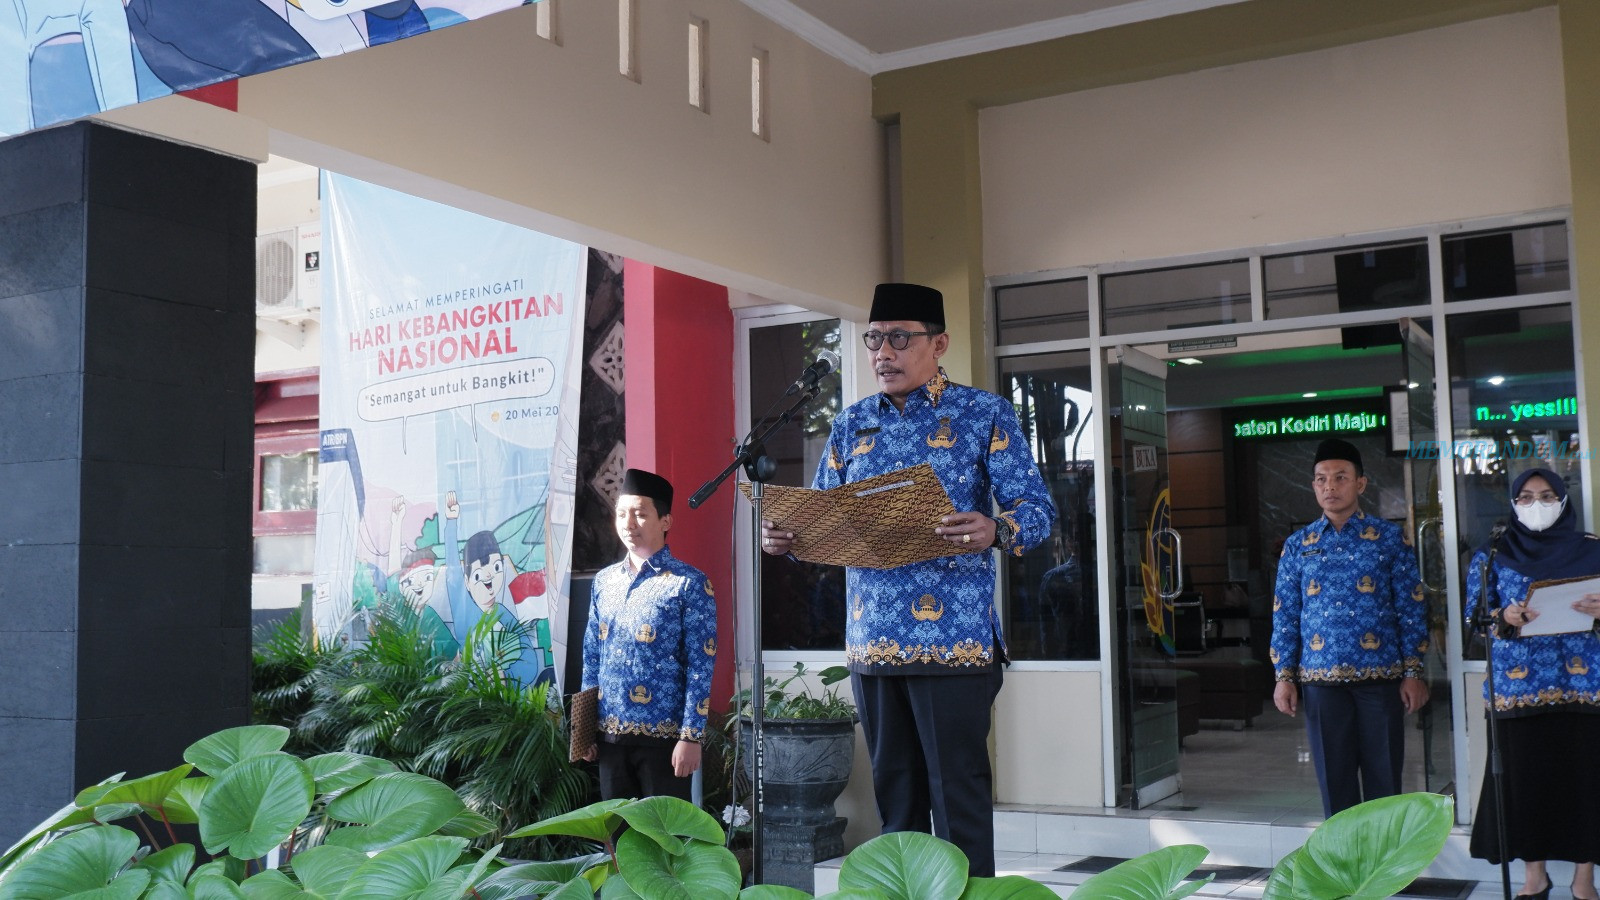 Peringati Hari Kebangkitan Nasional, Kantor Pertanahan Kabupaten Kediri Gelar Upacara